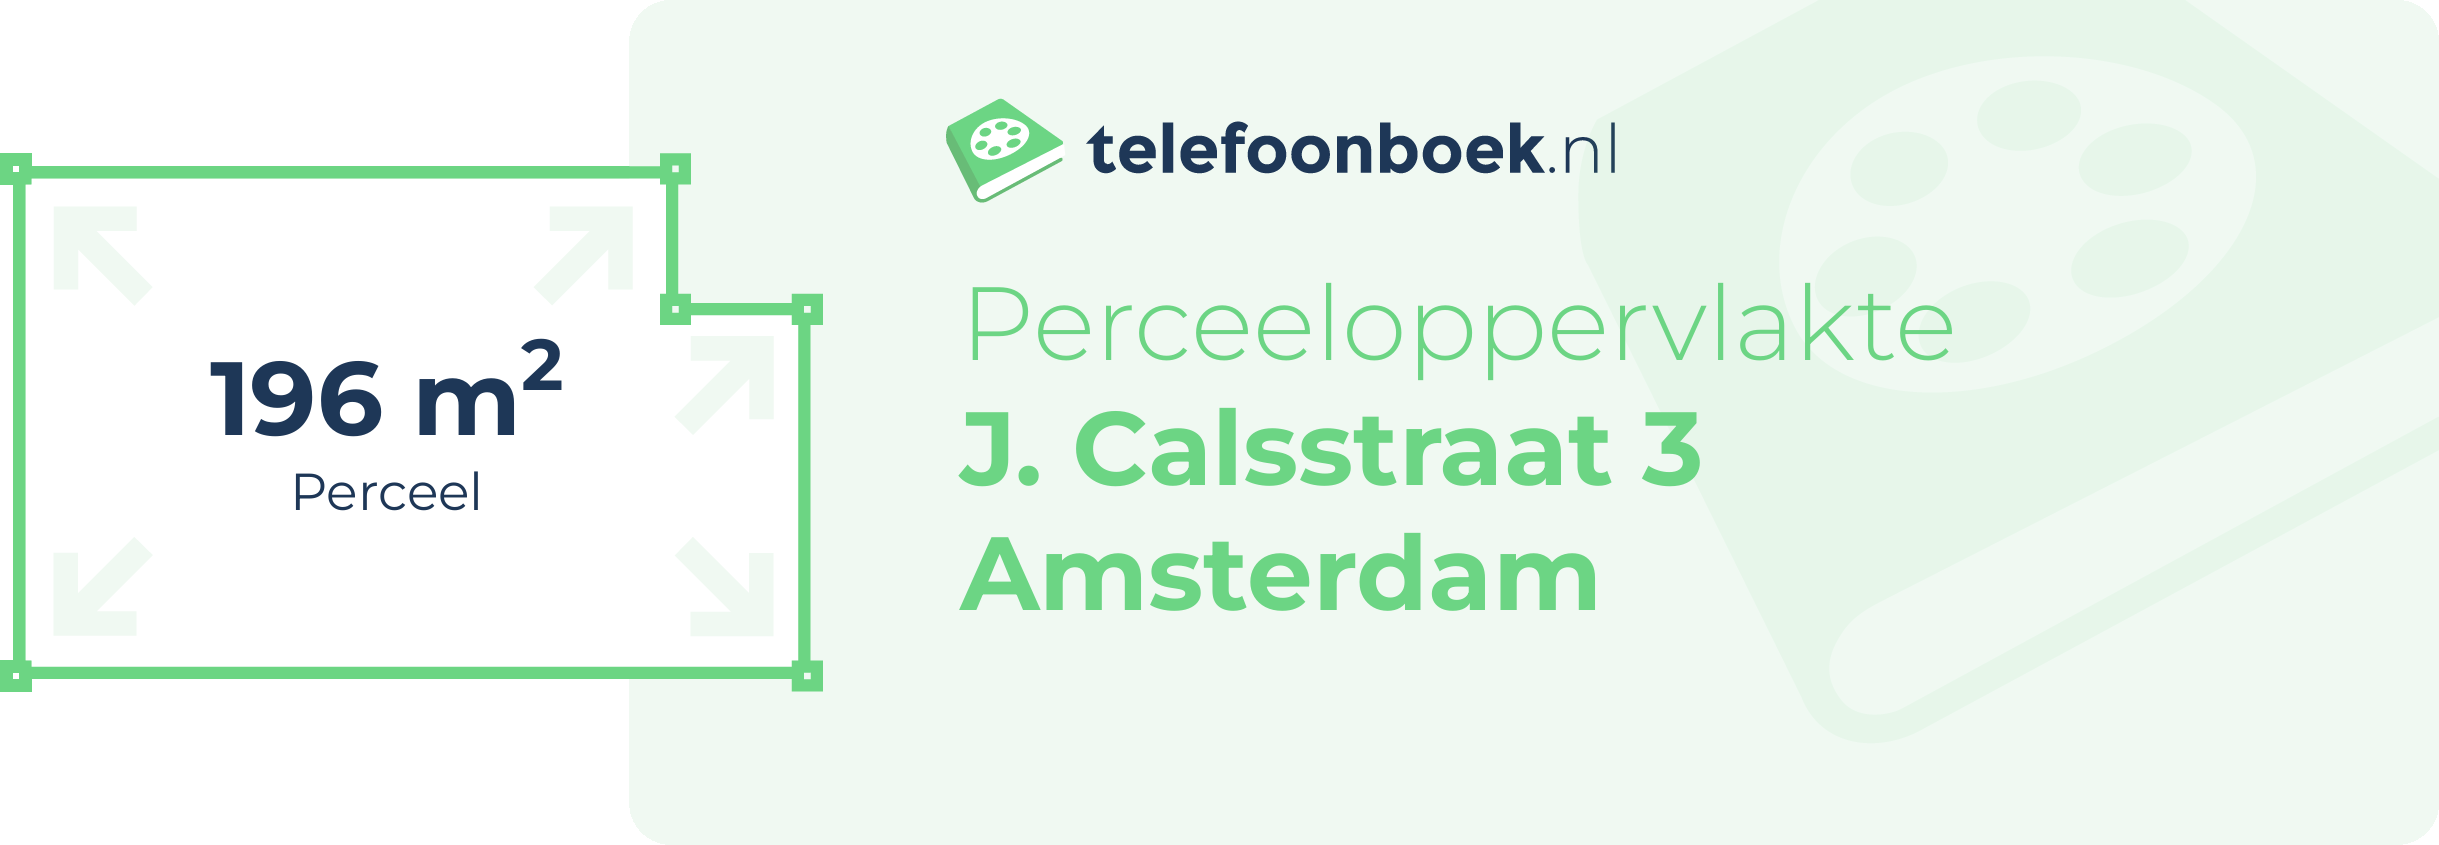 Perceeloppervlakte J. Calsstraat 3 Amsterdam